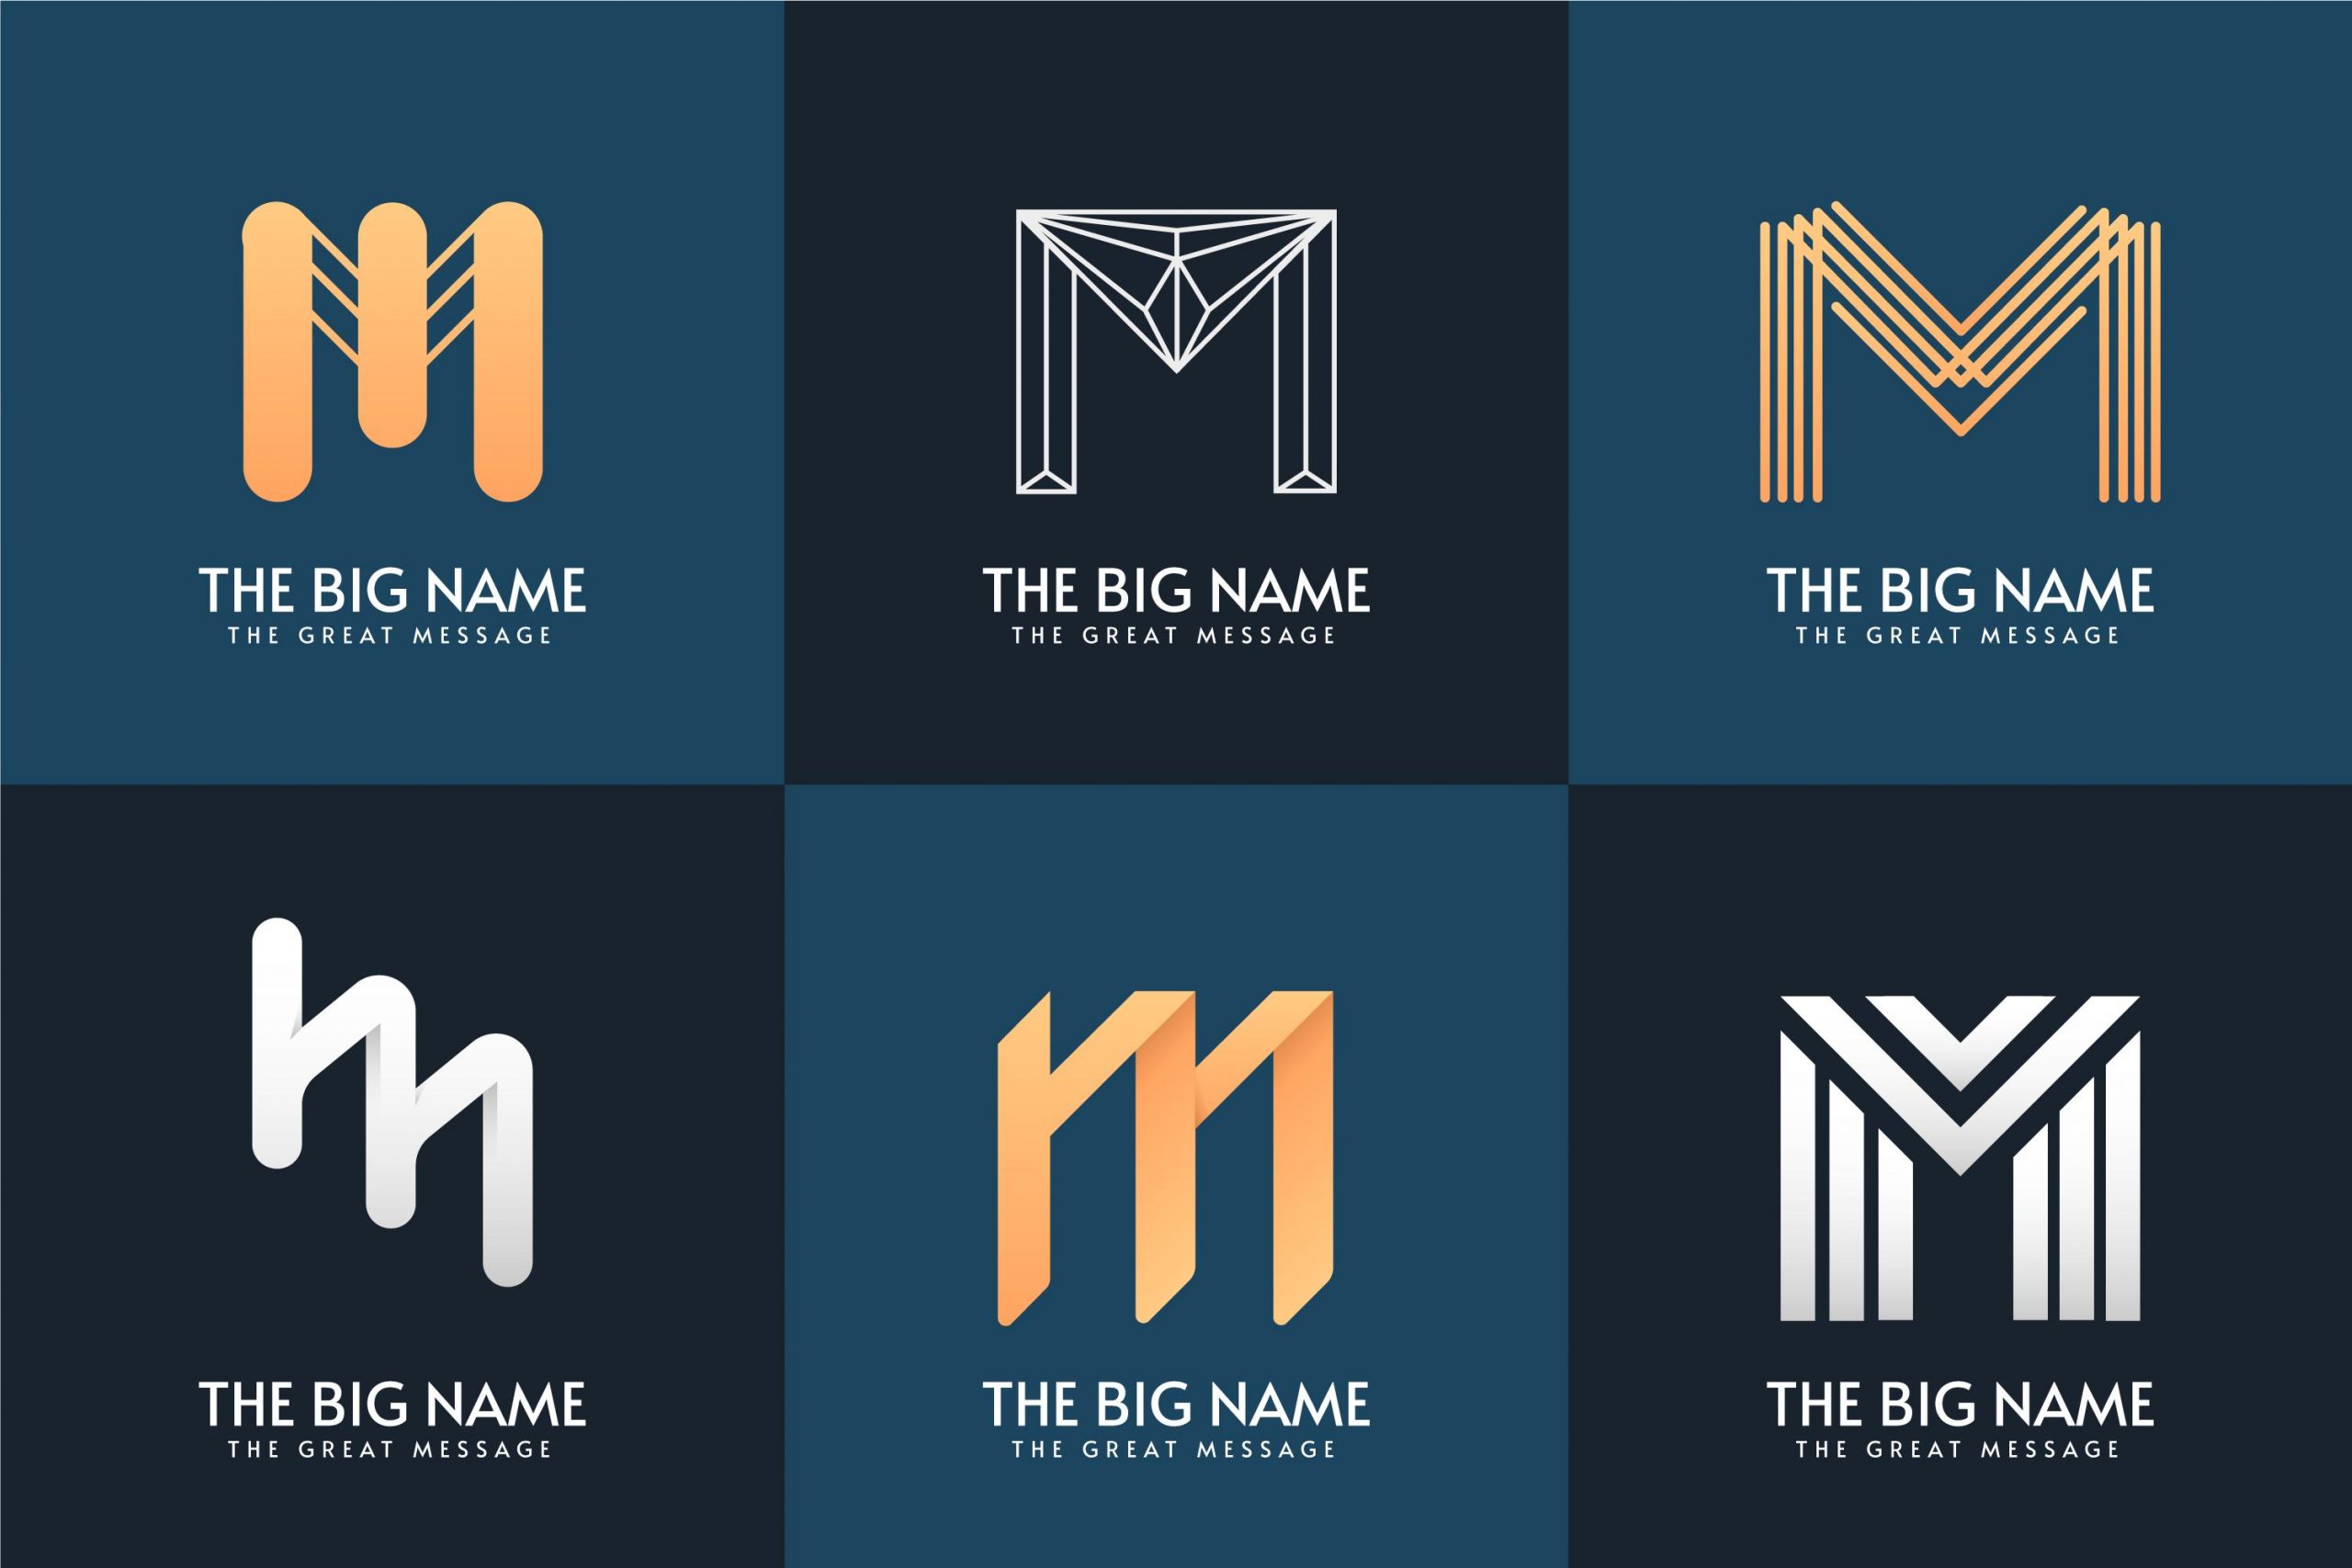 Forskjellige utkast av en logo som består av bokstaven m, branding